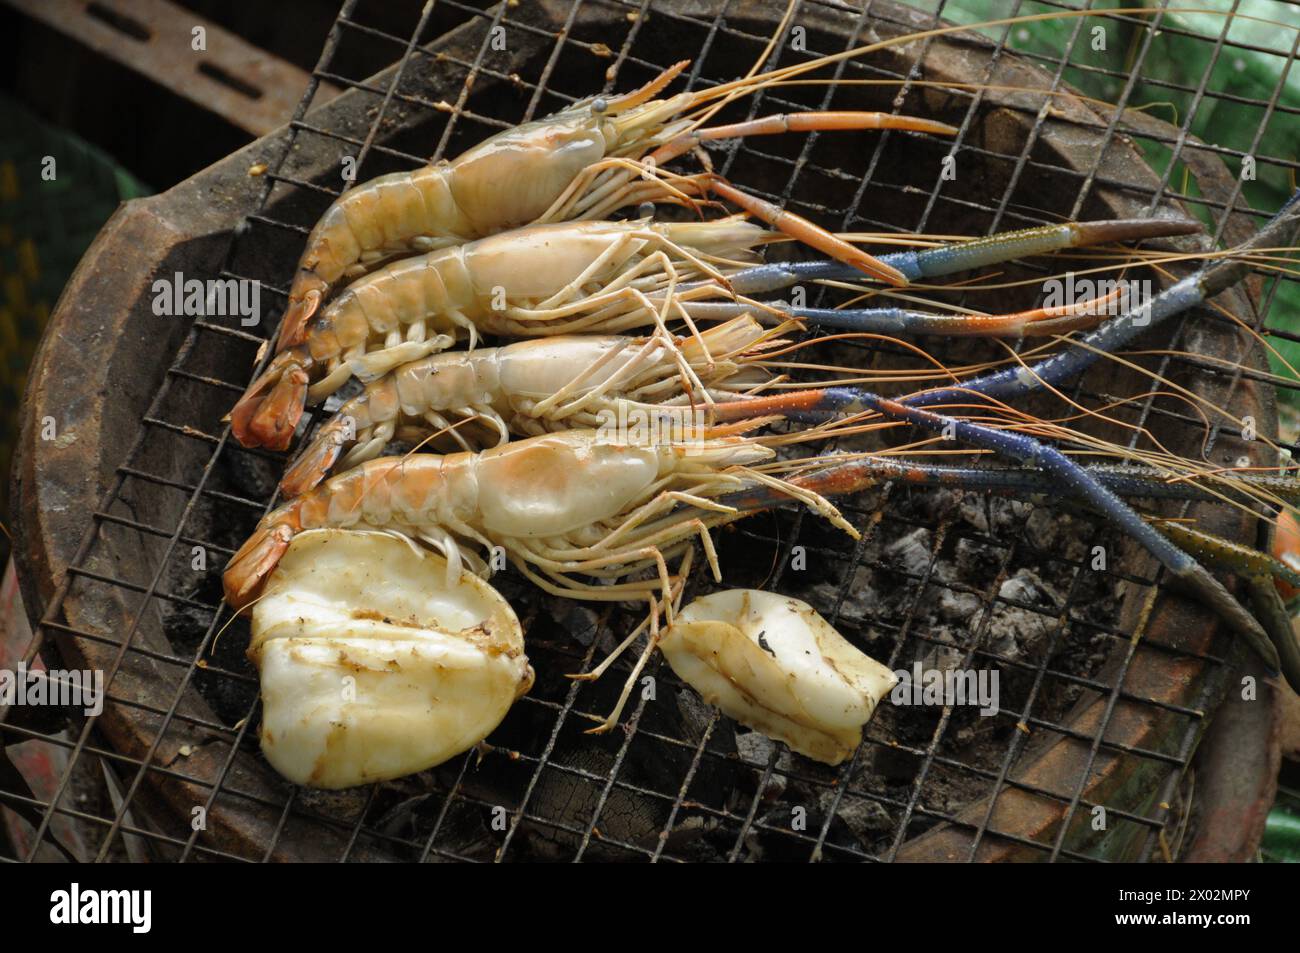 Crevettes grillées et calmars, cuisine de rue thaïlandaise, Bangkok, Thaïlande, Asie du Sud-est, Asie Banque D'Images